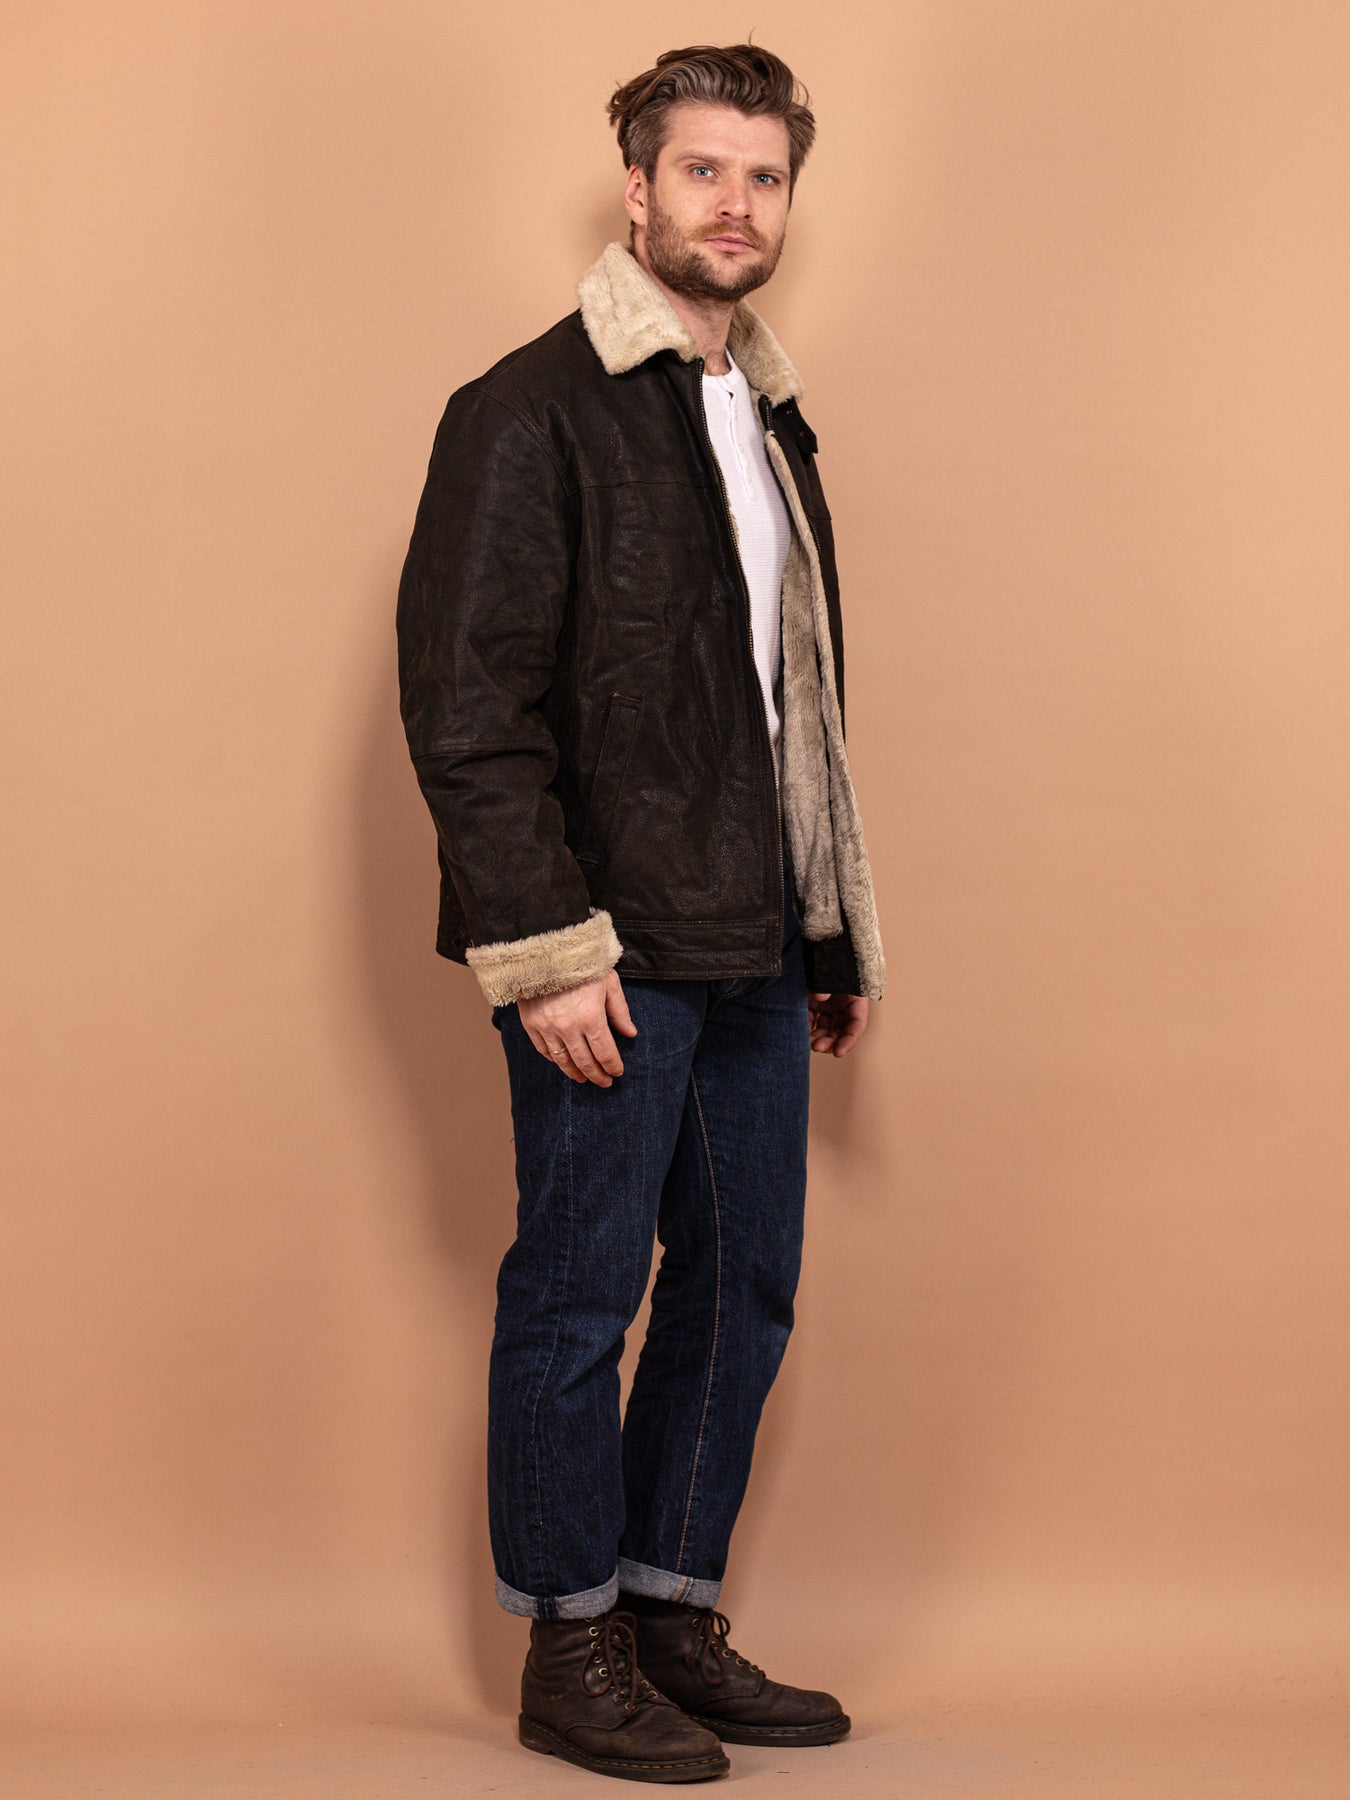 https://northerngrip.com/cdn/shop/files/vintage-90s-men-faux-fur-lined-leather-jacket-black-xxl_2_1800x1800.jpg?v=1707461102